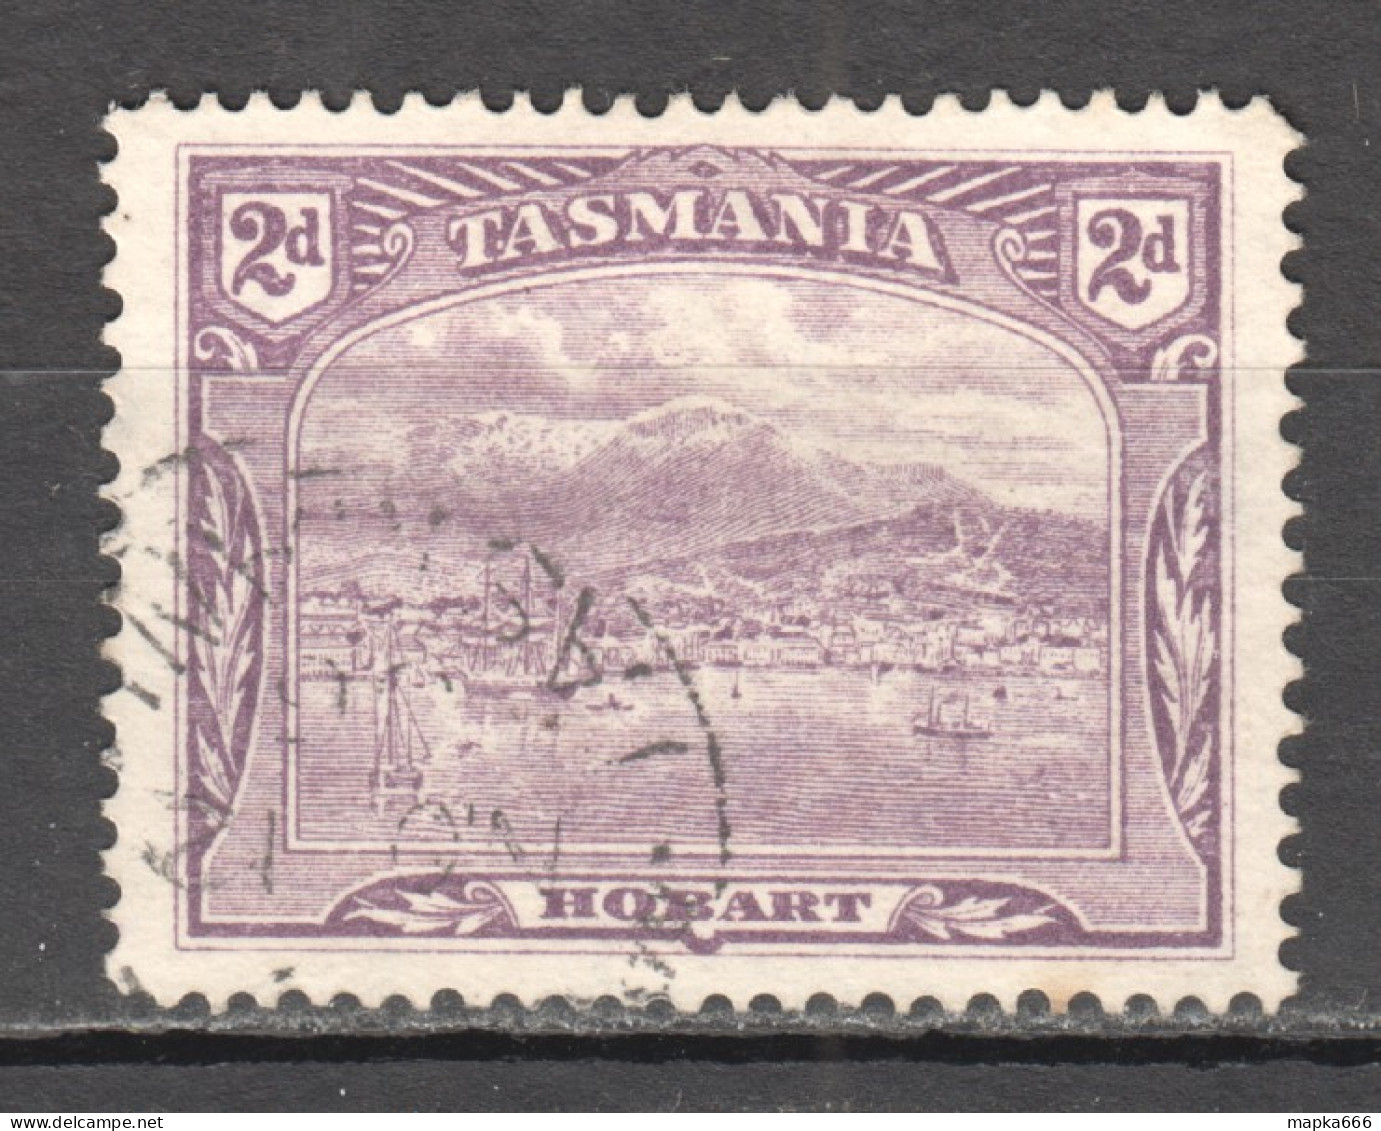 Tas218 1905 Australia Tasmania Gibbons Sg #251 1St Used - Gebruikt